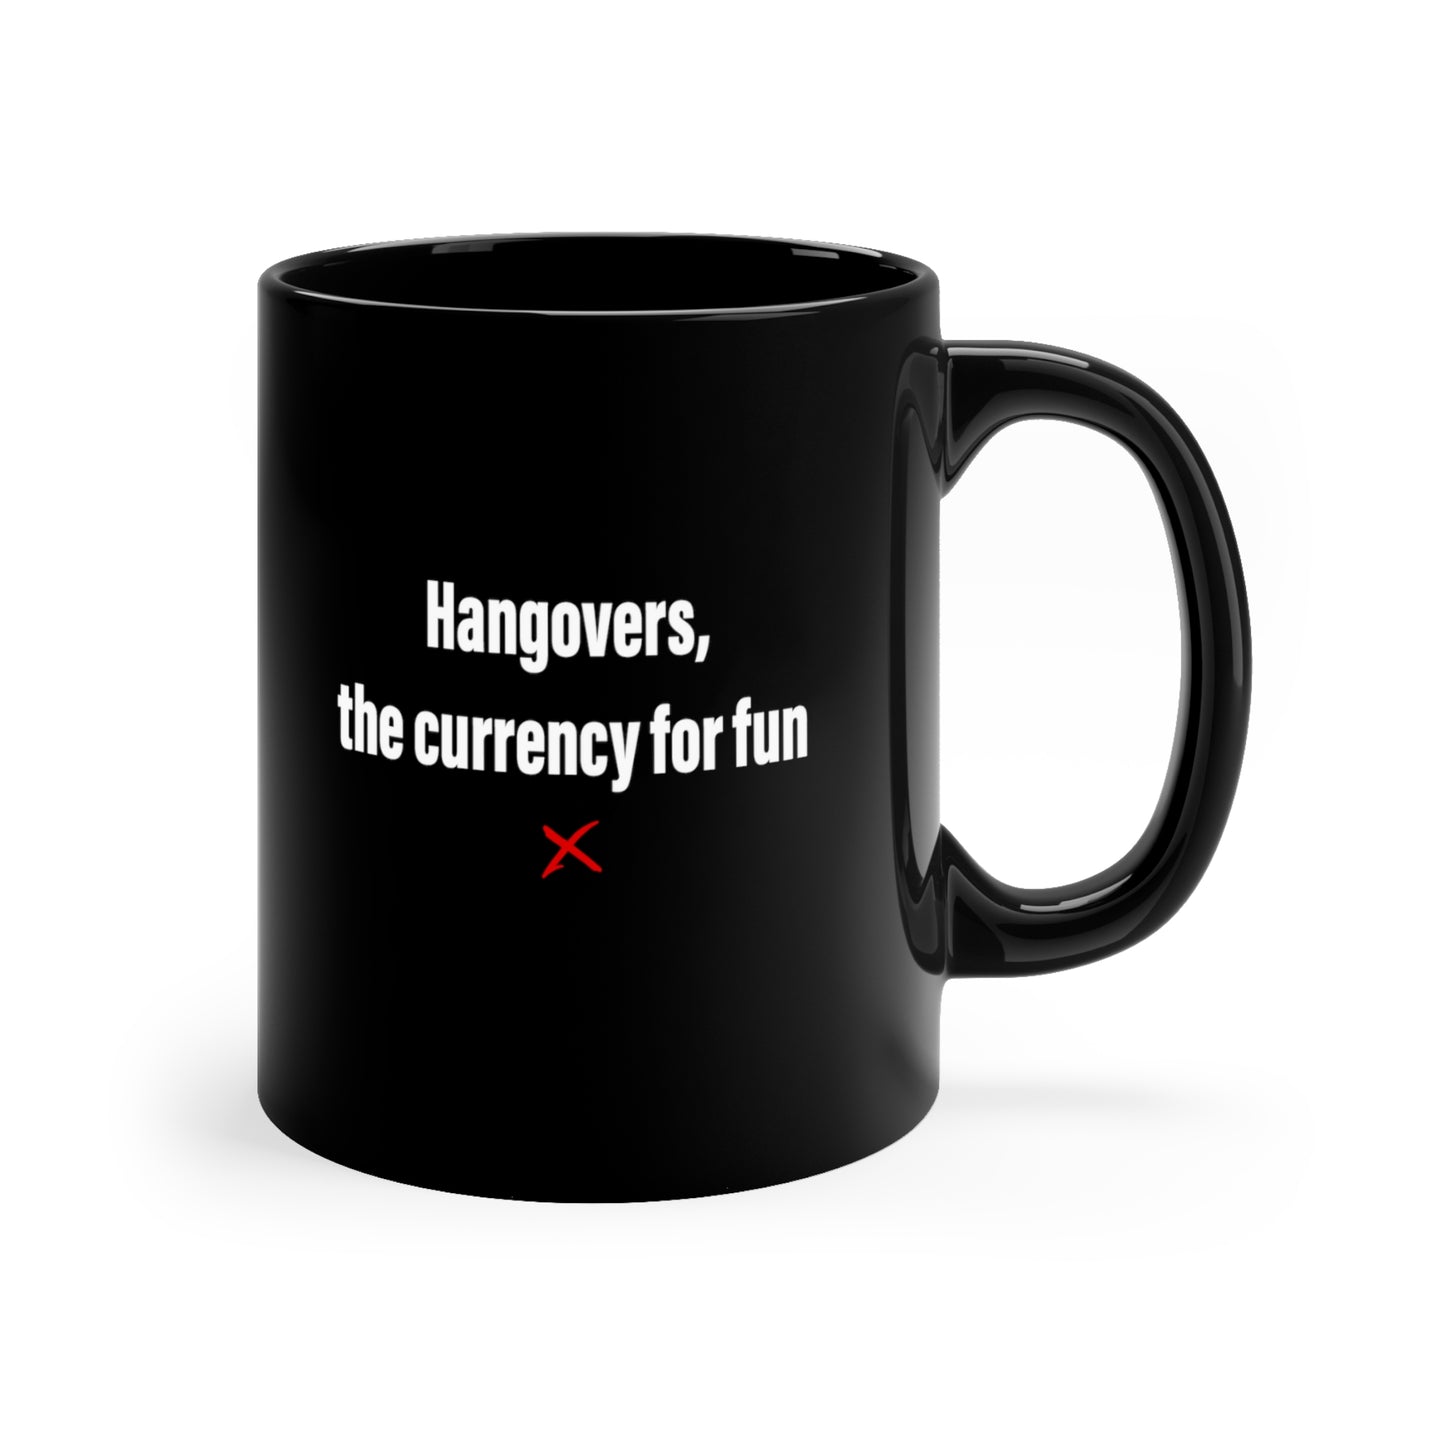 Hangovers, the currency for fun - Mug